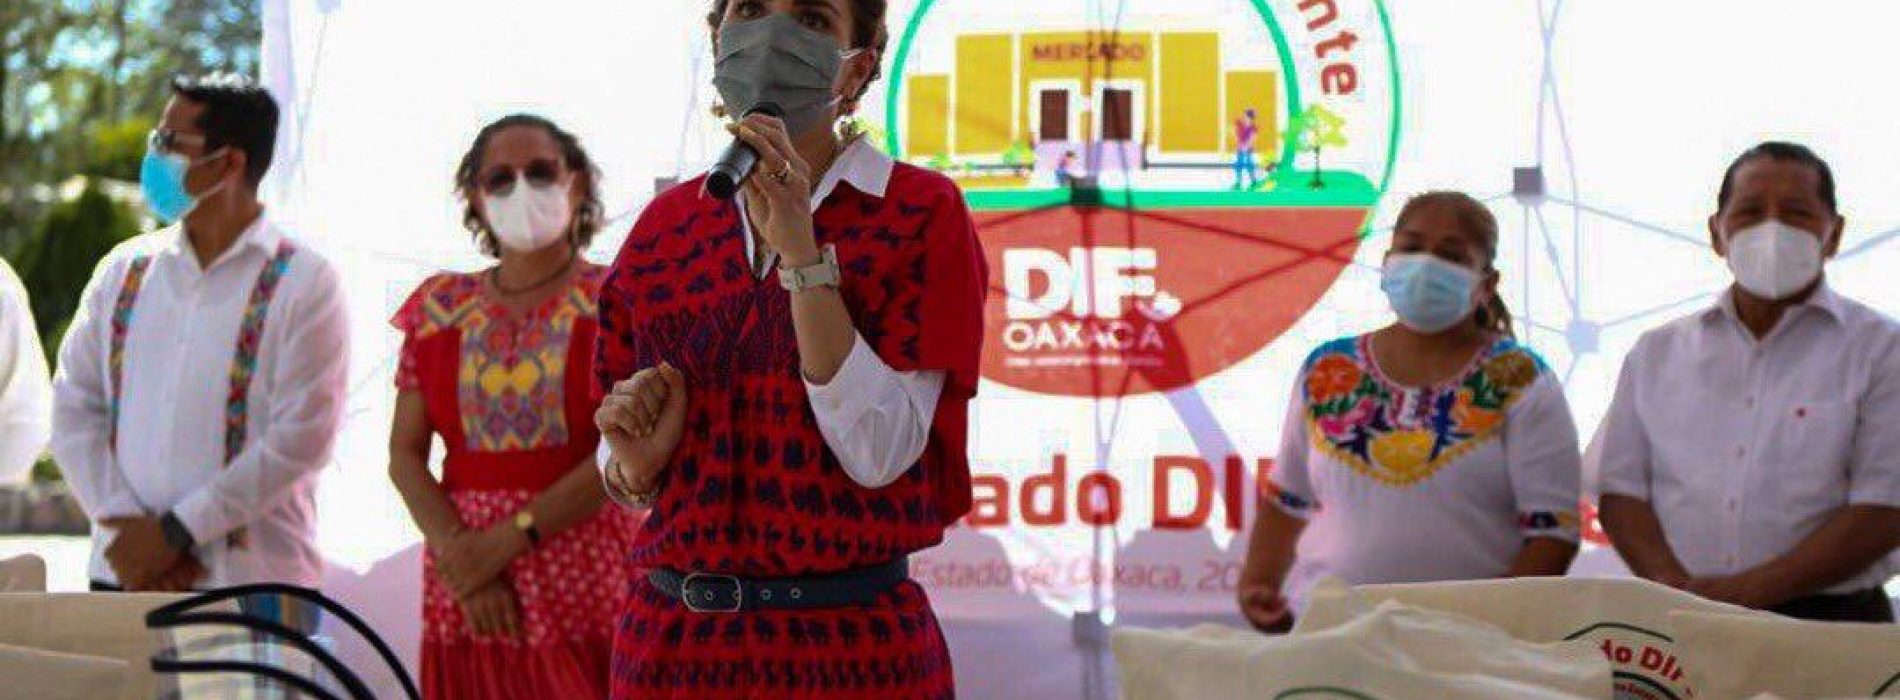 Oaxaca se pone a la vanguardia en materia de accesibilidad social y turística, con Mitla Incluyente